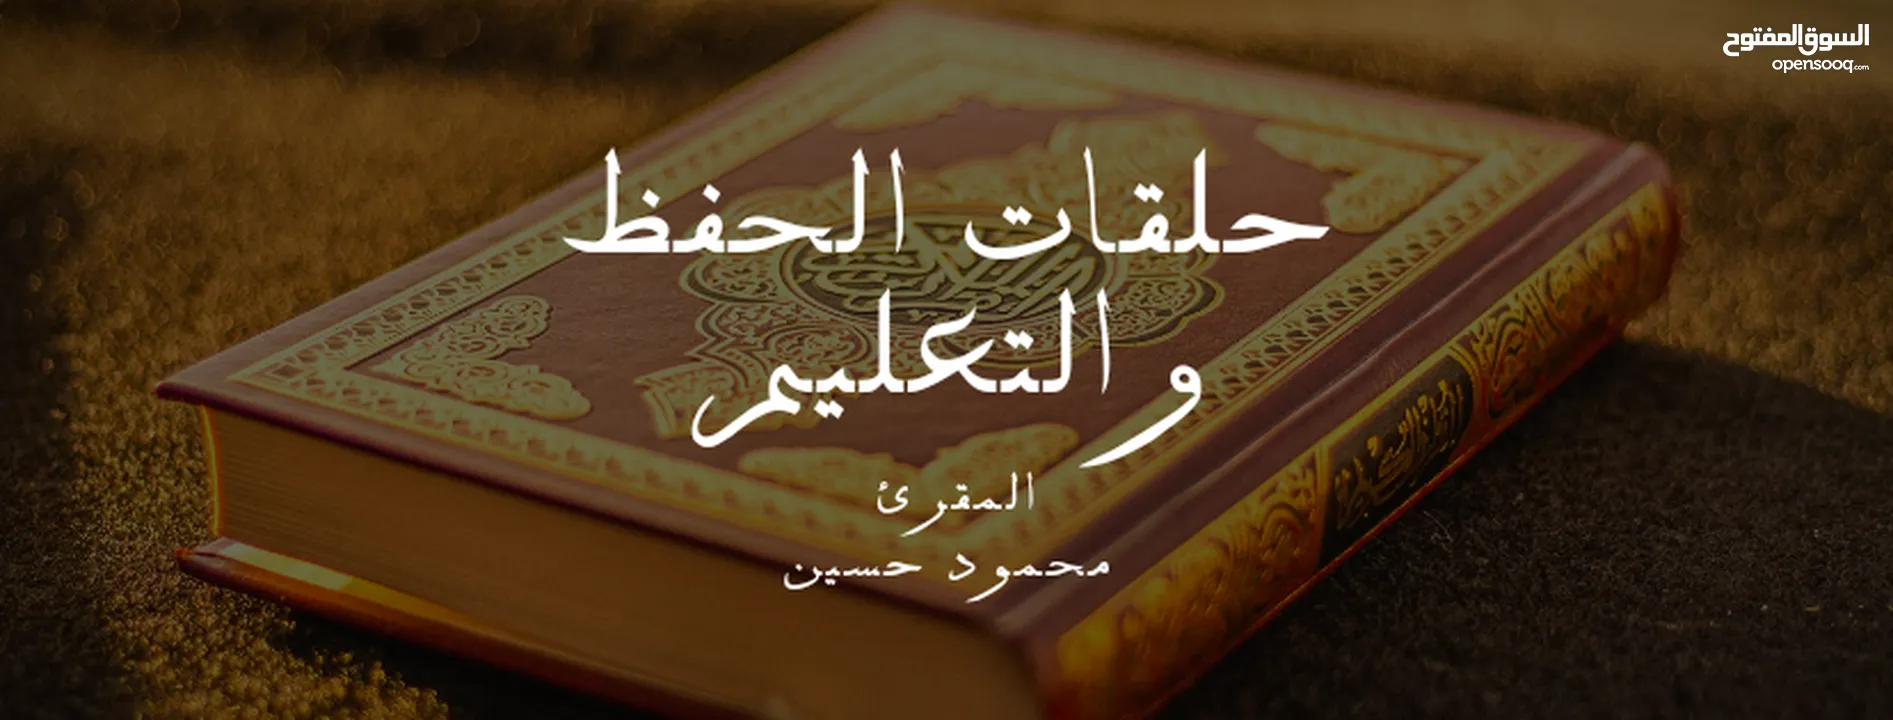 تعليم القرآن الكريم والقراءة والكتابة للكبار والصغار.